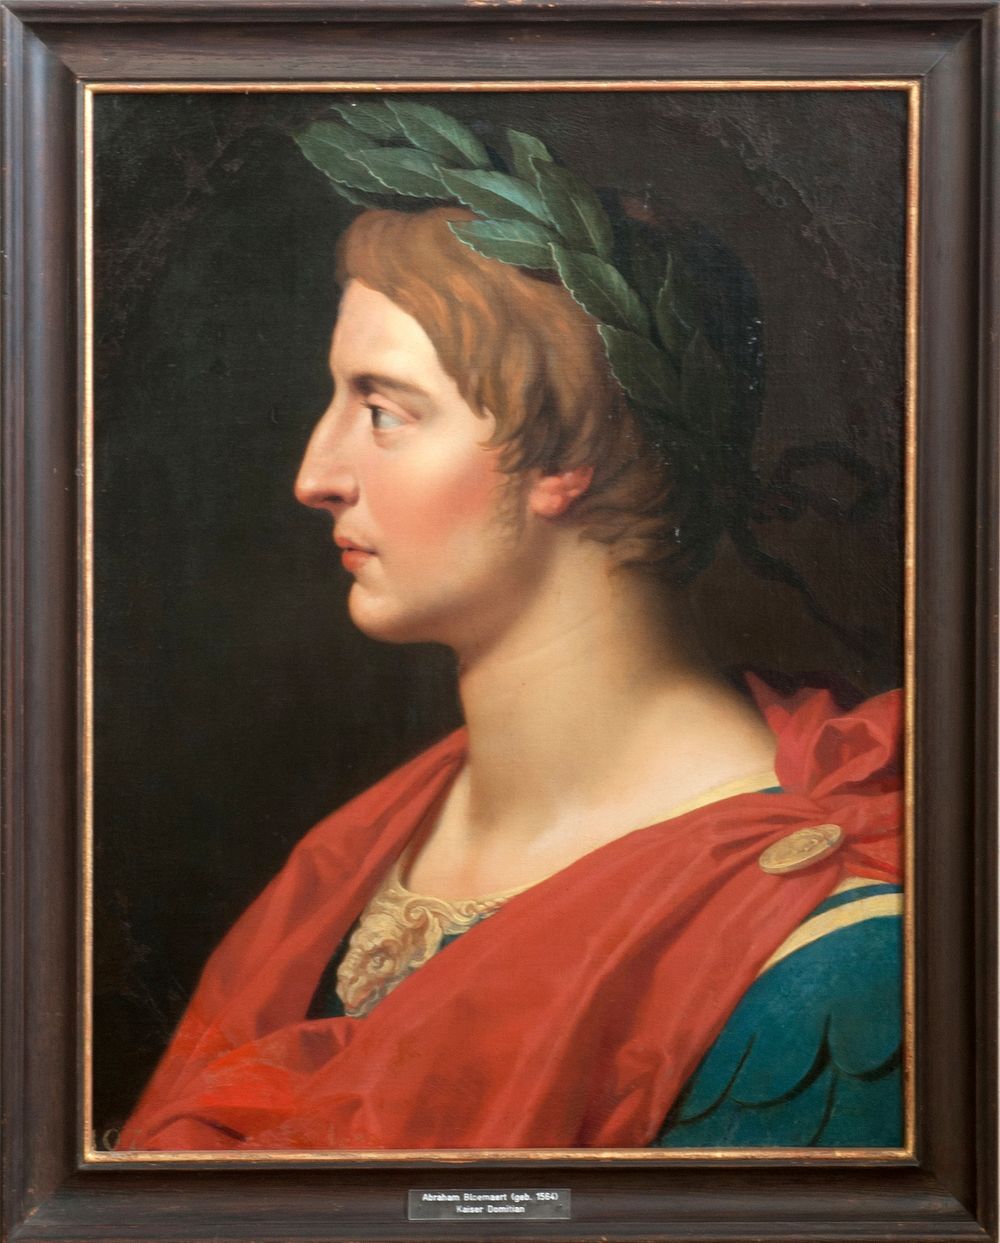 Teil einer Serie römischer Kaiserporträts niederländischer und flämischer Maler